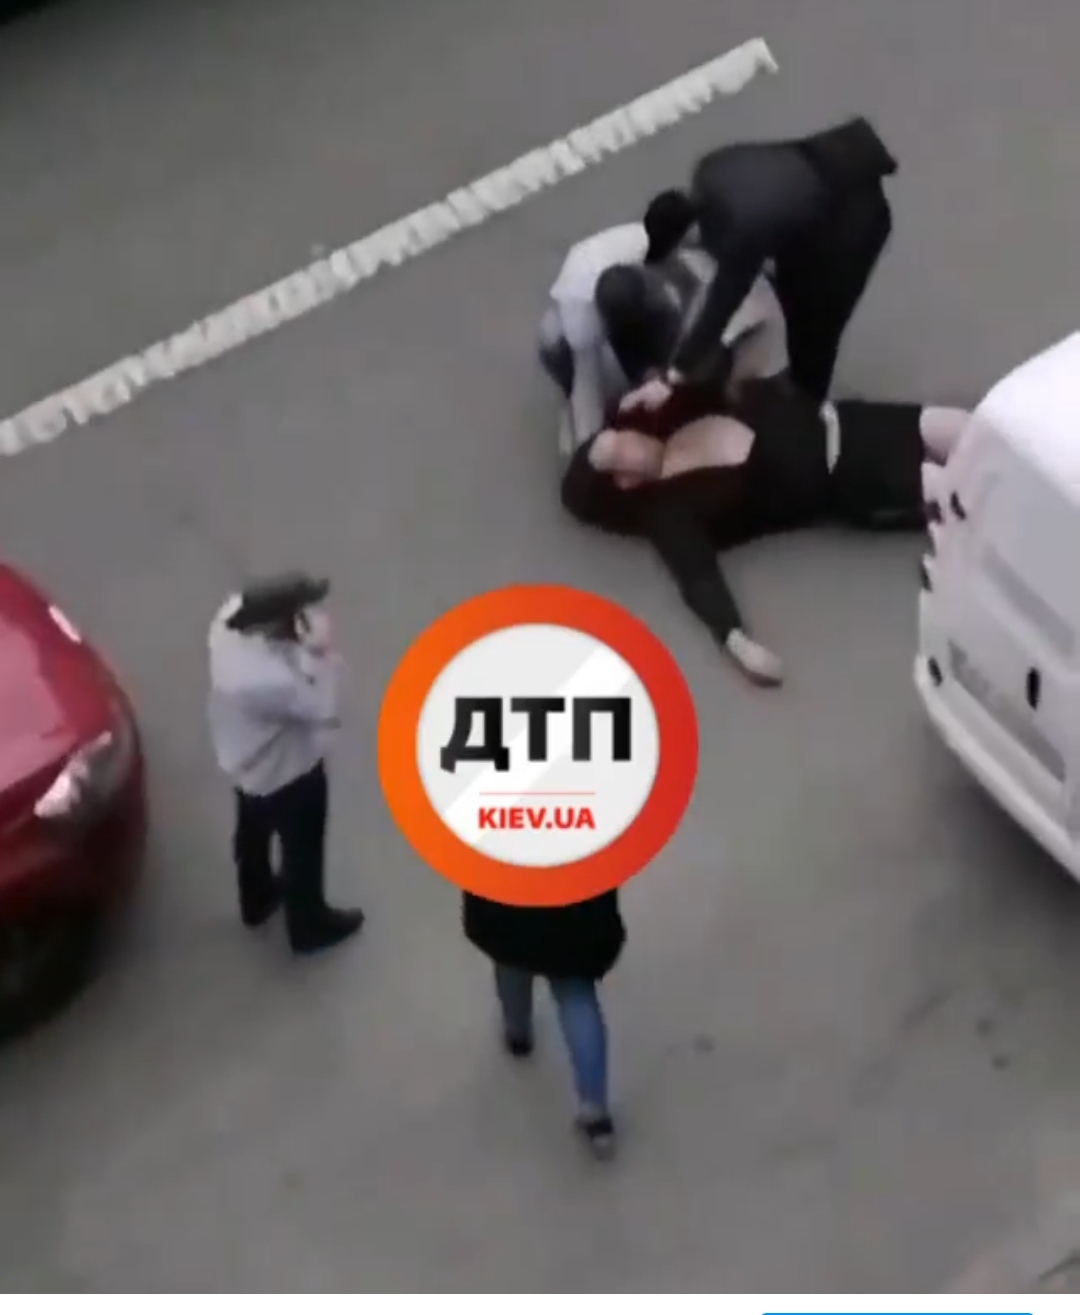 ДТП в Киеве на Печерске - пьяный мужчина на самокате врезался в автомобиль